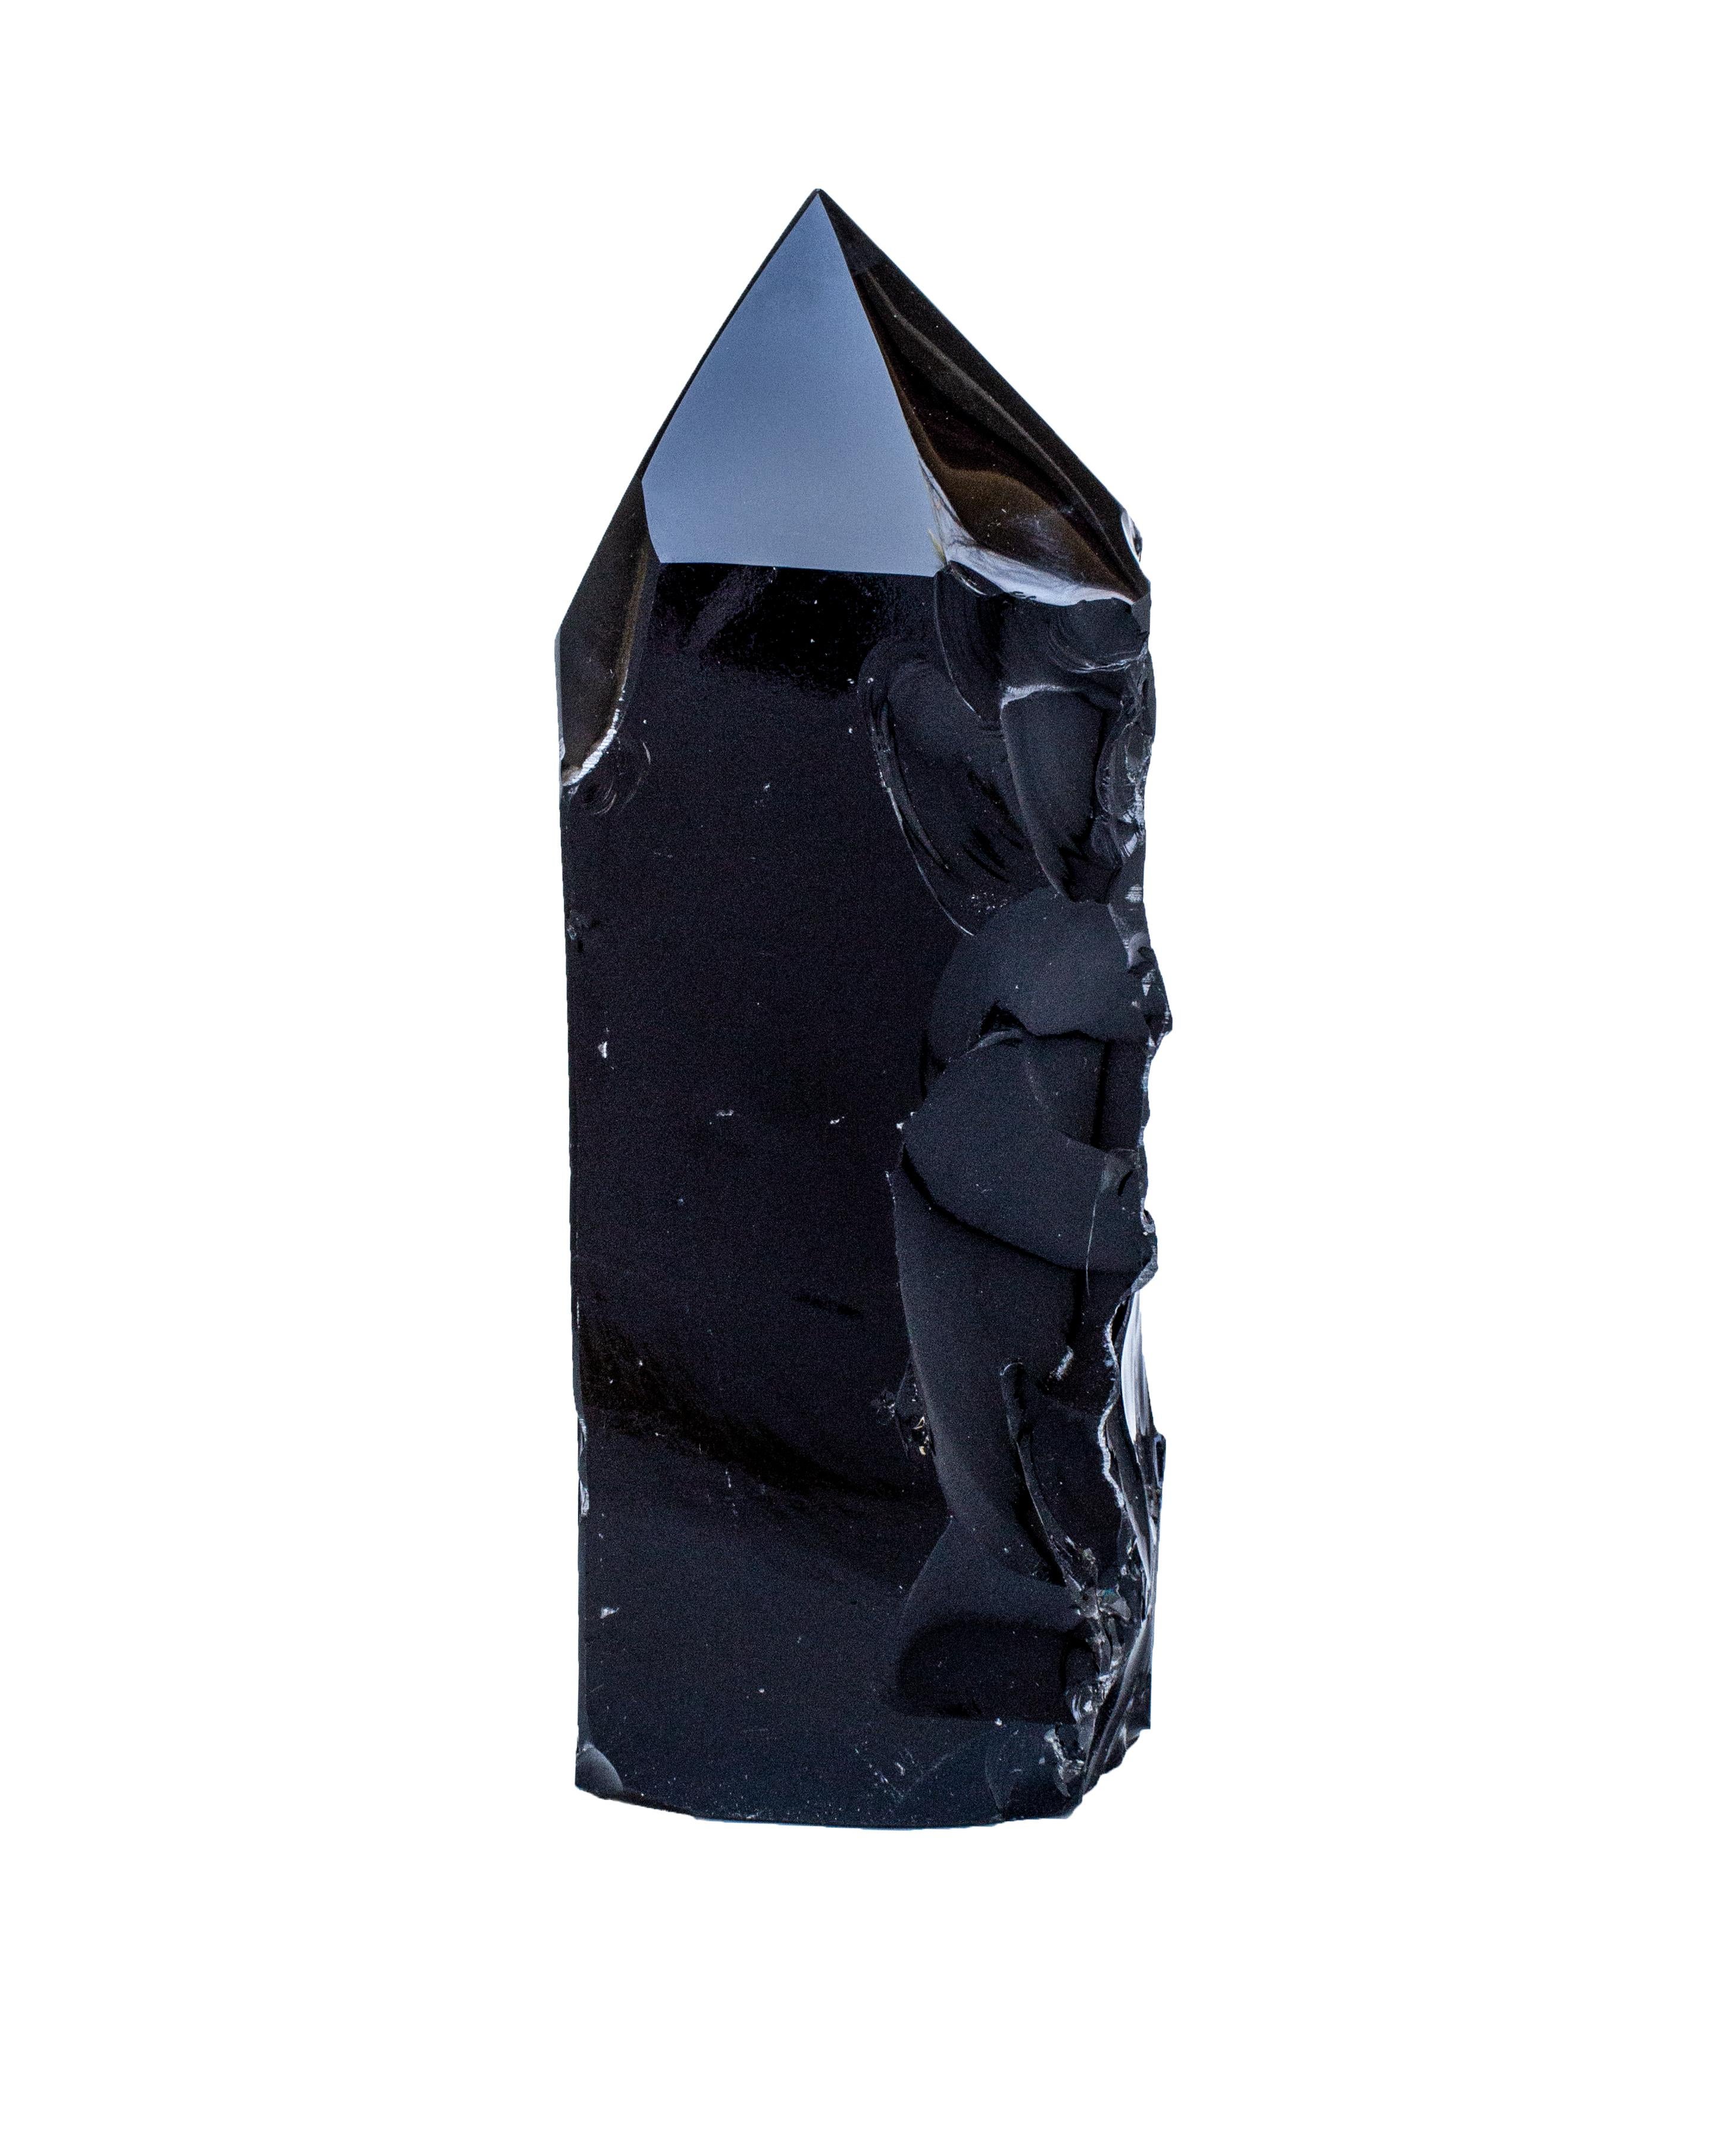 Polierte schwarze Obsidianspitze mit natürlich geformten Vertiefungen. Die Spitze wurde geschliffen und poliert, aber Teile dieses Stücks sind in ihrer organischen Form belassen, um einer natürlich geformten Skulptur in Verbindung mit der Hand des